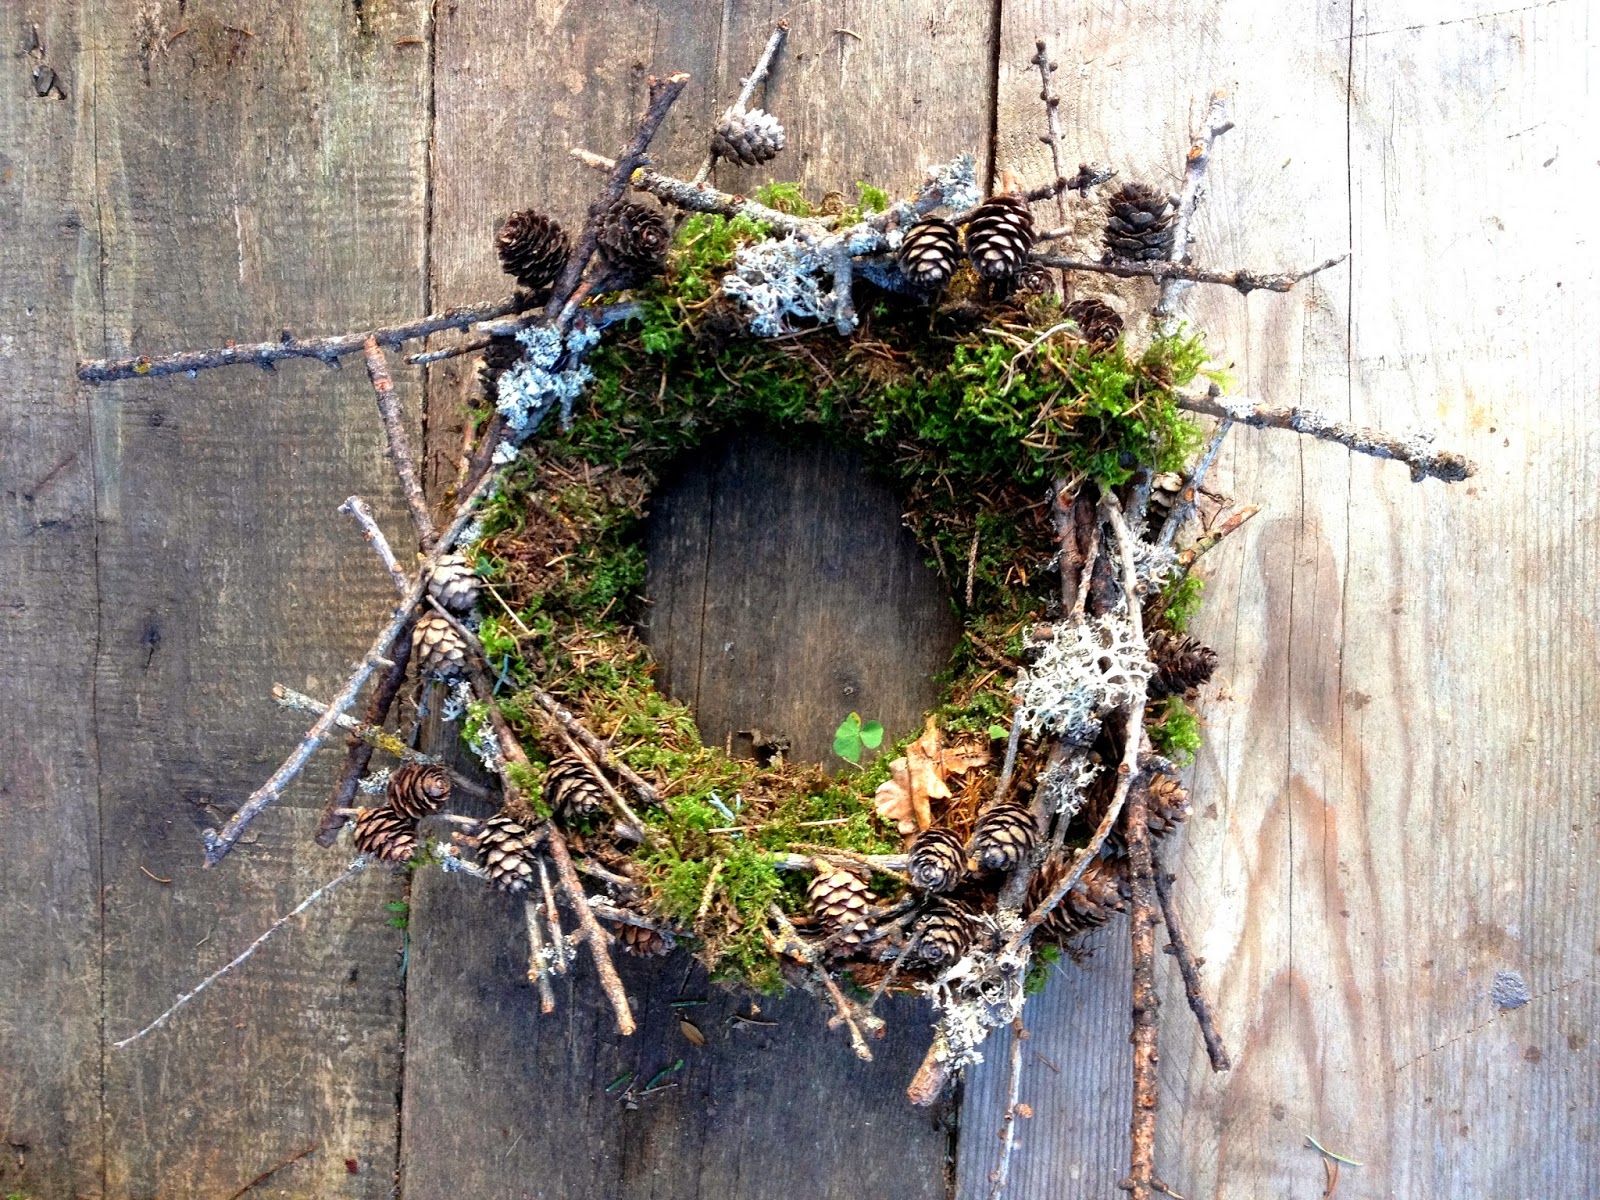 Moss, lichen and twig wreath - Mooskranz | wreaths | Pinterest ...